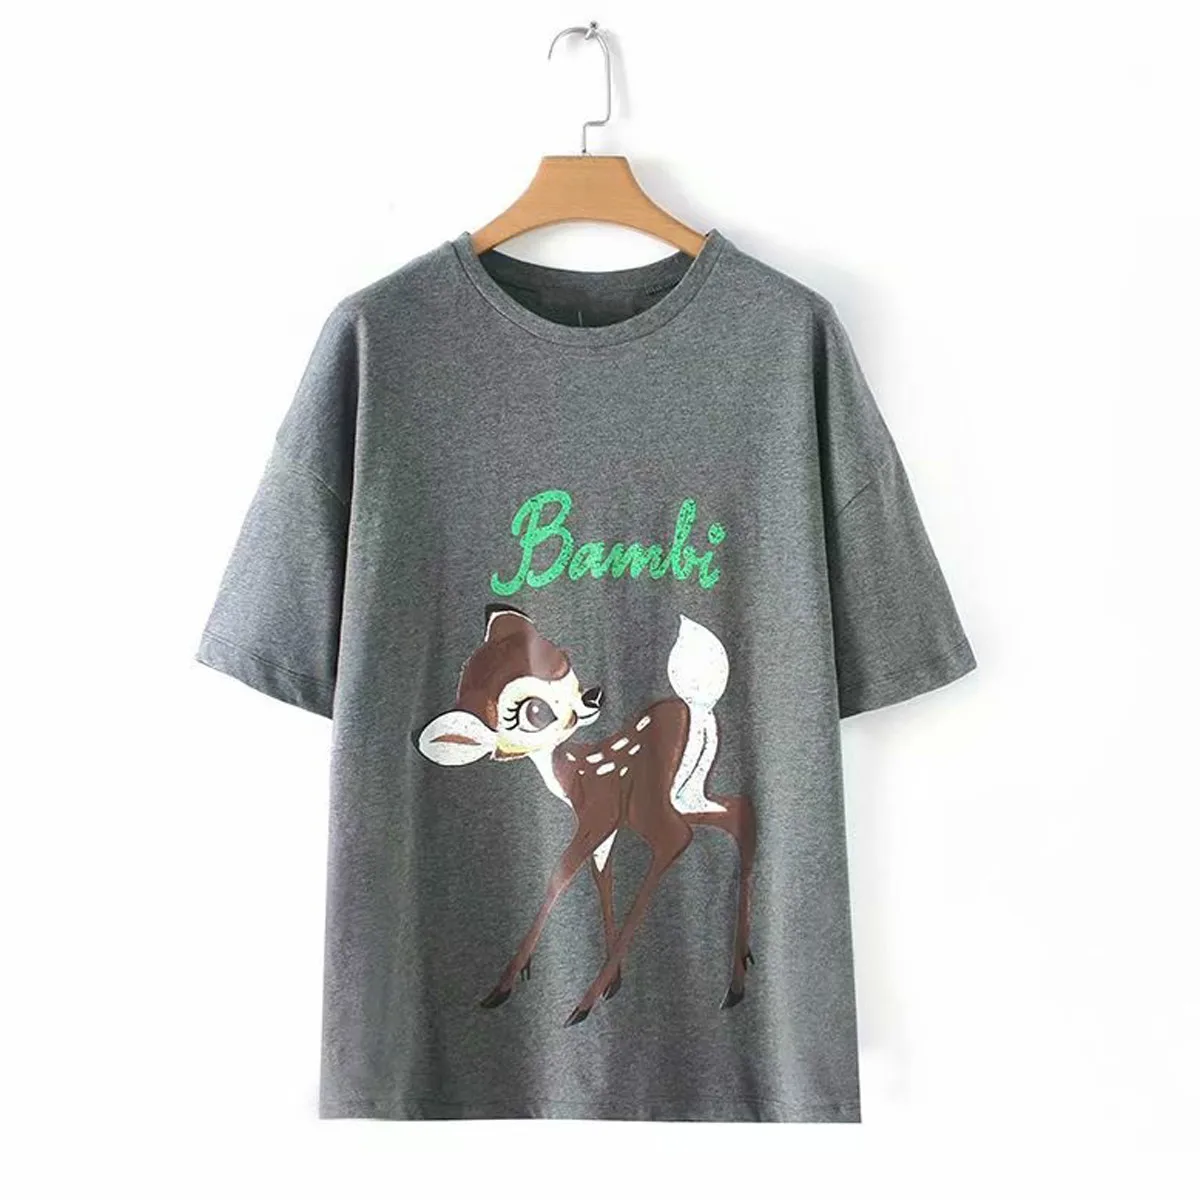 Kiyumi женская футболка летняя футболка с принтом оленя Повседневная футболка с круглым вырезом и коротким рукавом хиппи шикарная уличная одежда Графические футболки для женщин - Цвет: Gray